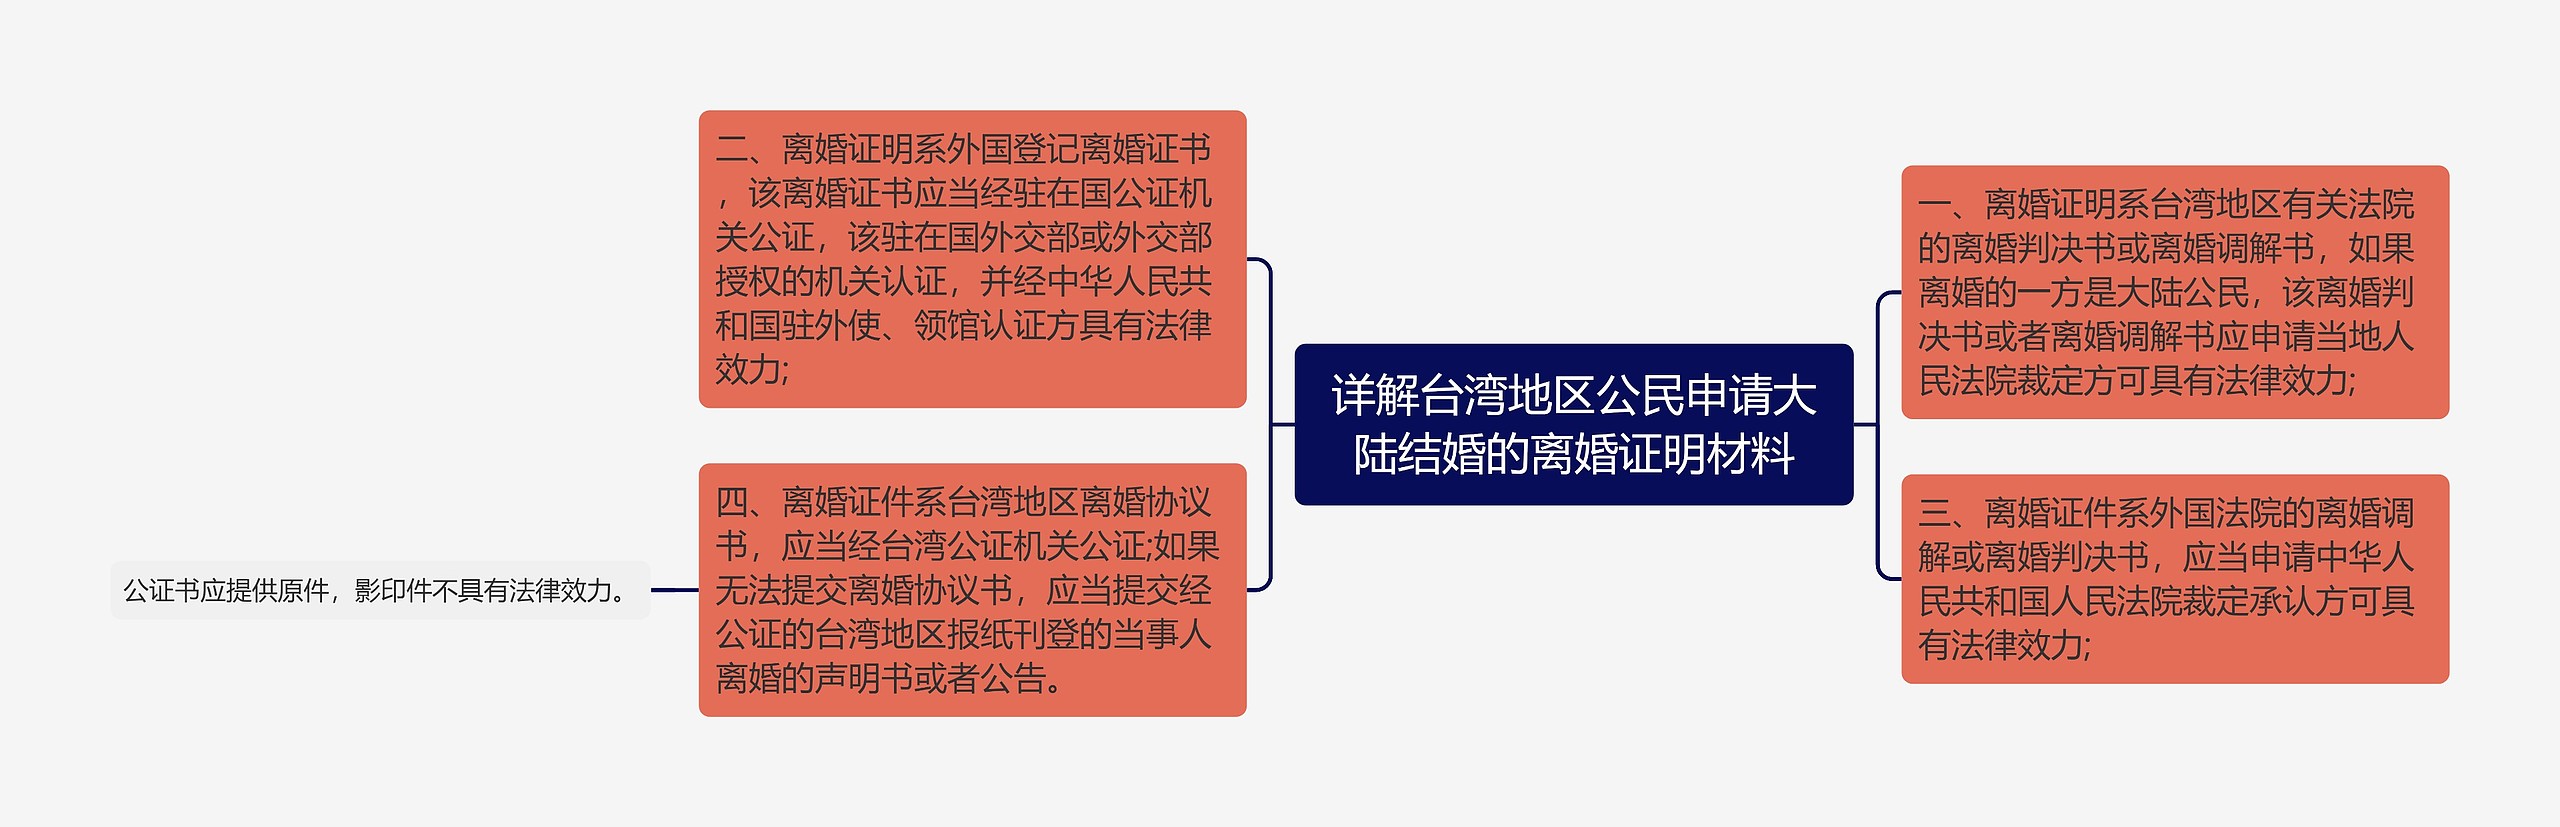 详解台湾地区公民申请大陆结婚的离婚证明材料思维导图